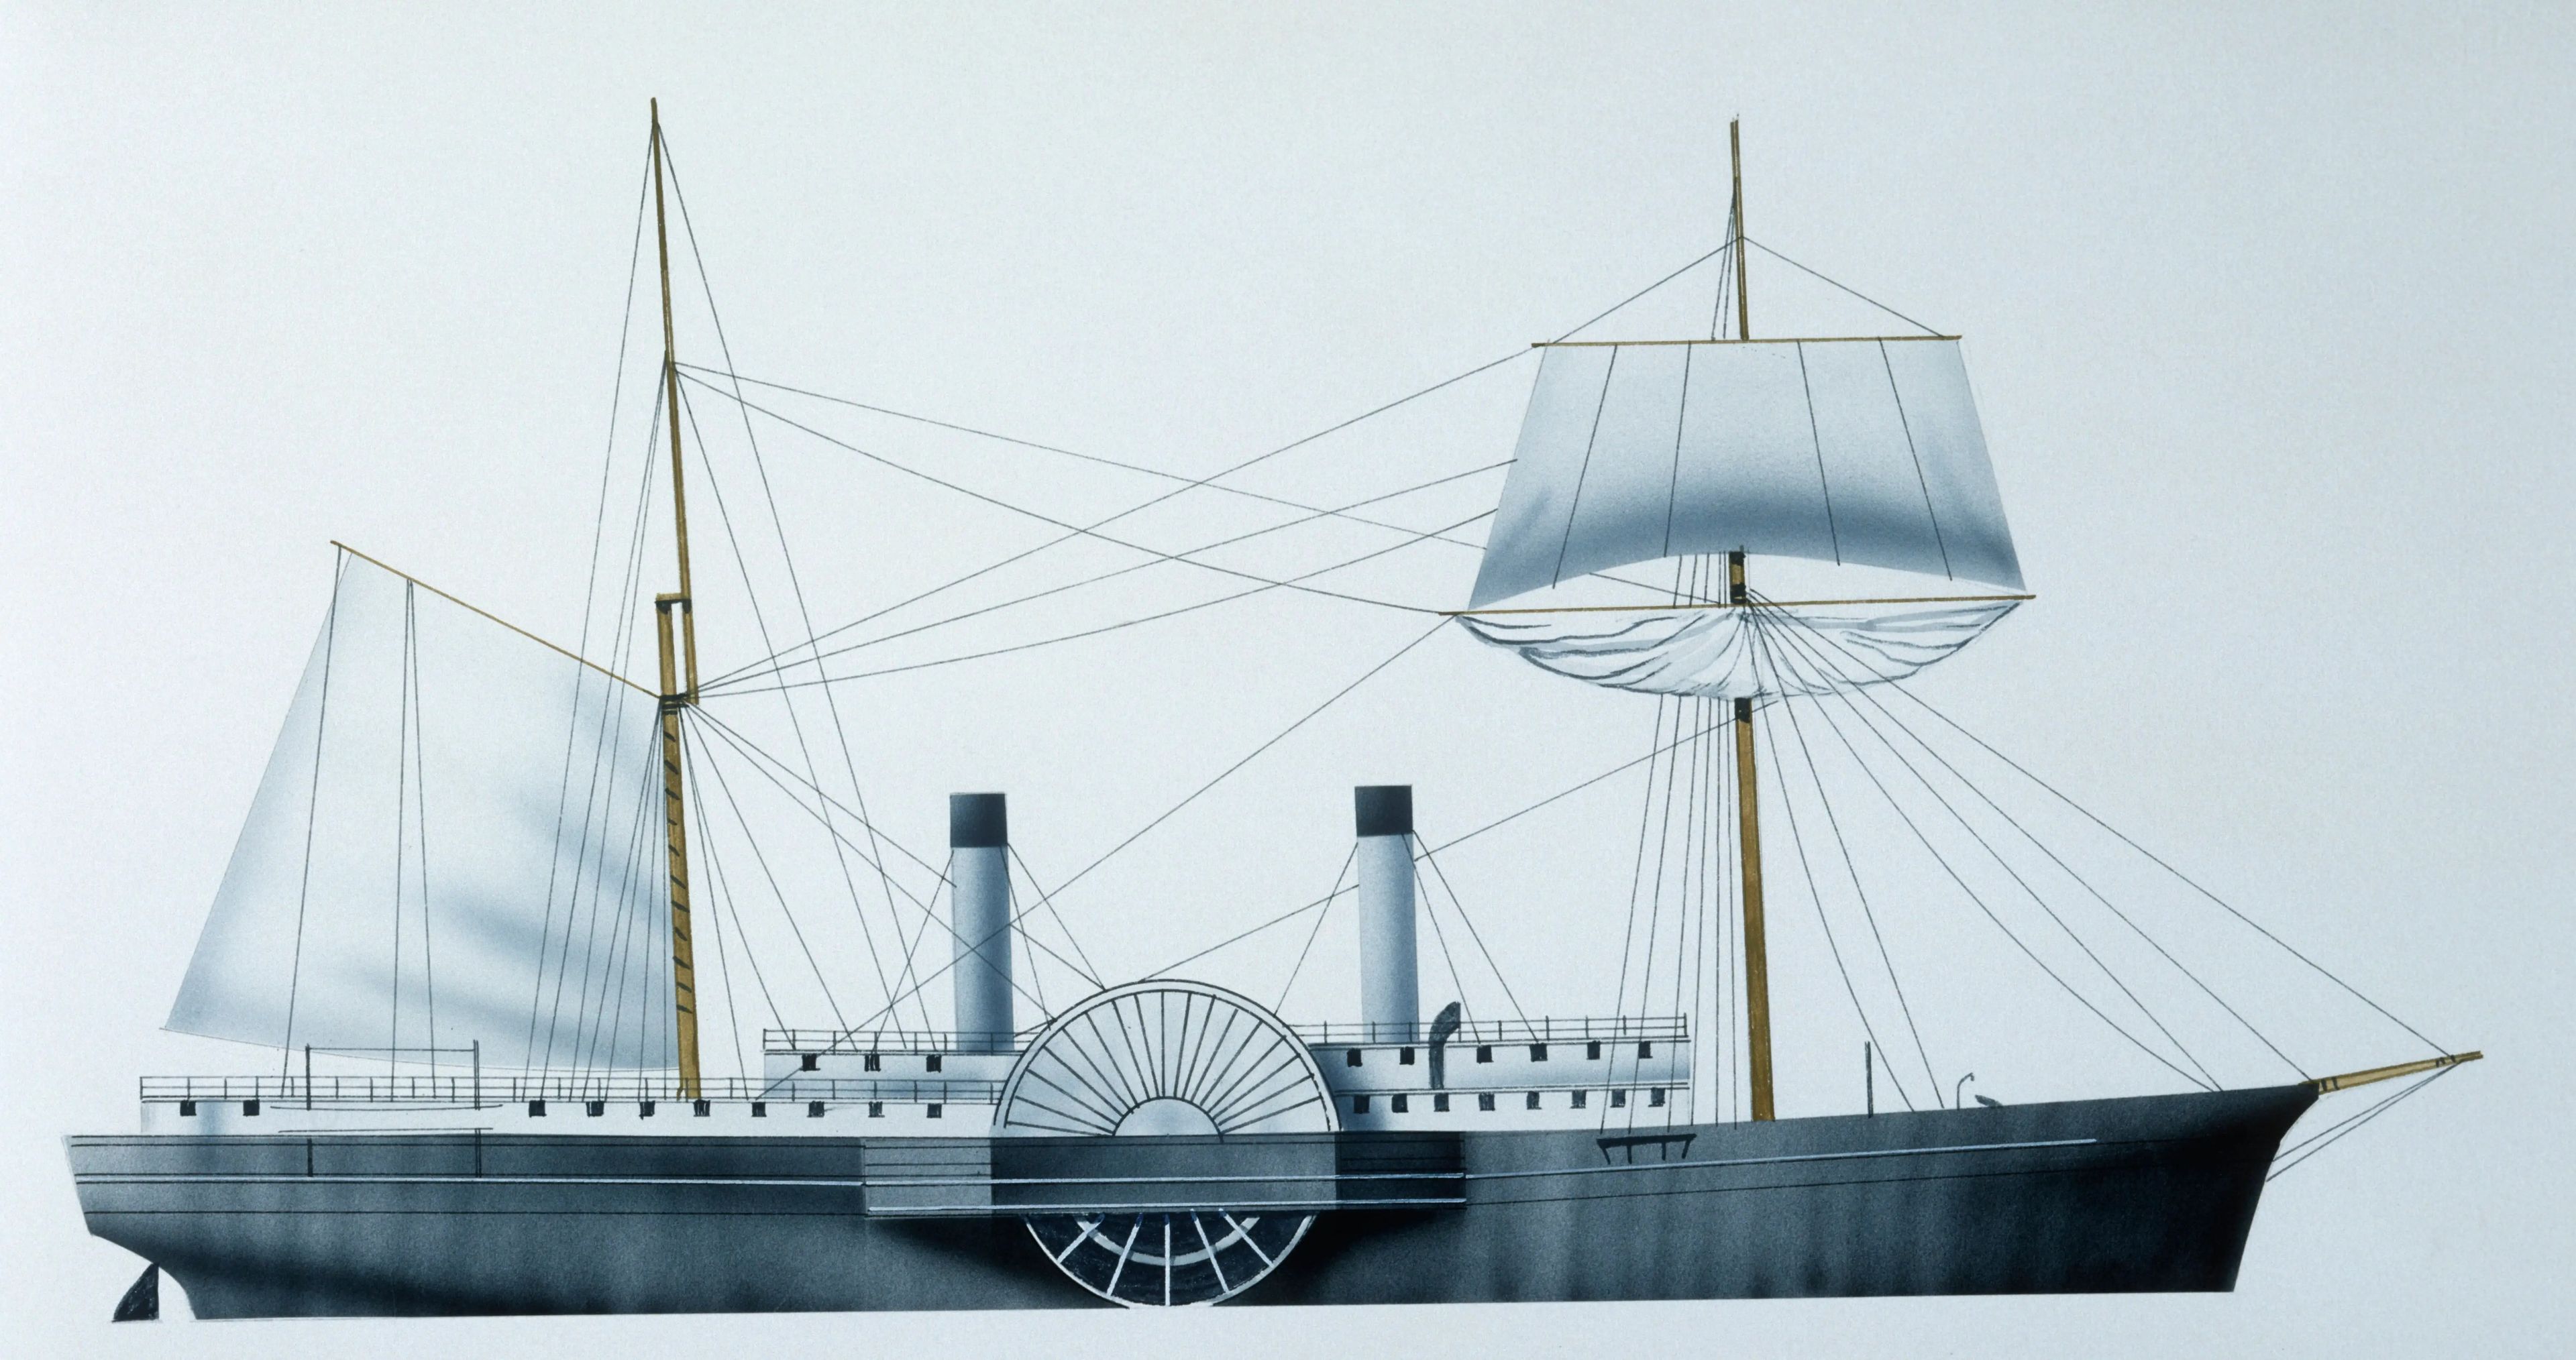 Estados Unidos, vapor de rueda lateral de la Armada de la Unión USS Quaker City, 1854, ilustración en color.